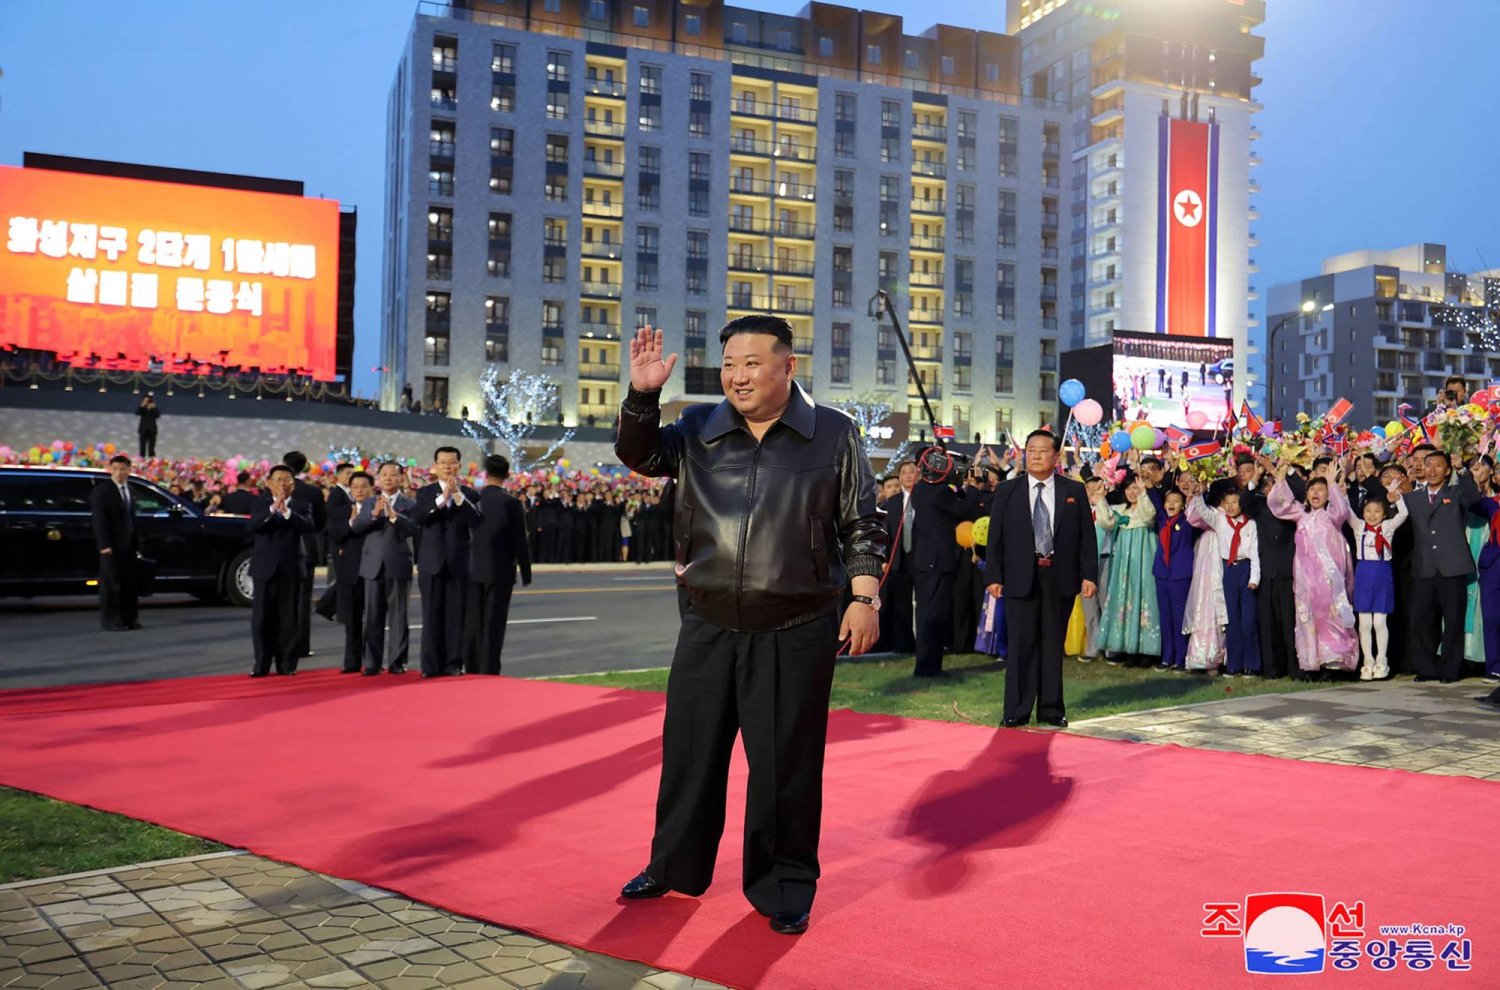 زعيم كوريا الشمالية كيم جونغ أون يشارك في احتفالية بمناسبة إكمال المرحلة الثانية من بناء 10 آلاف وحدة سكنية ببيونغ يانغ (أ.ف.ب)